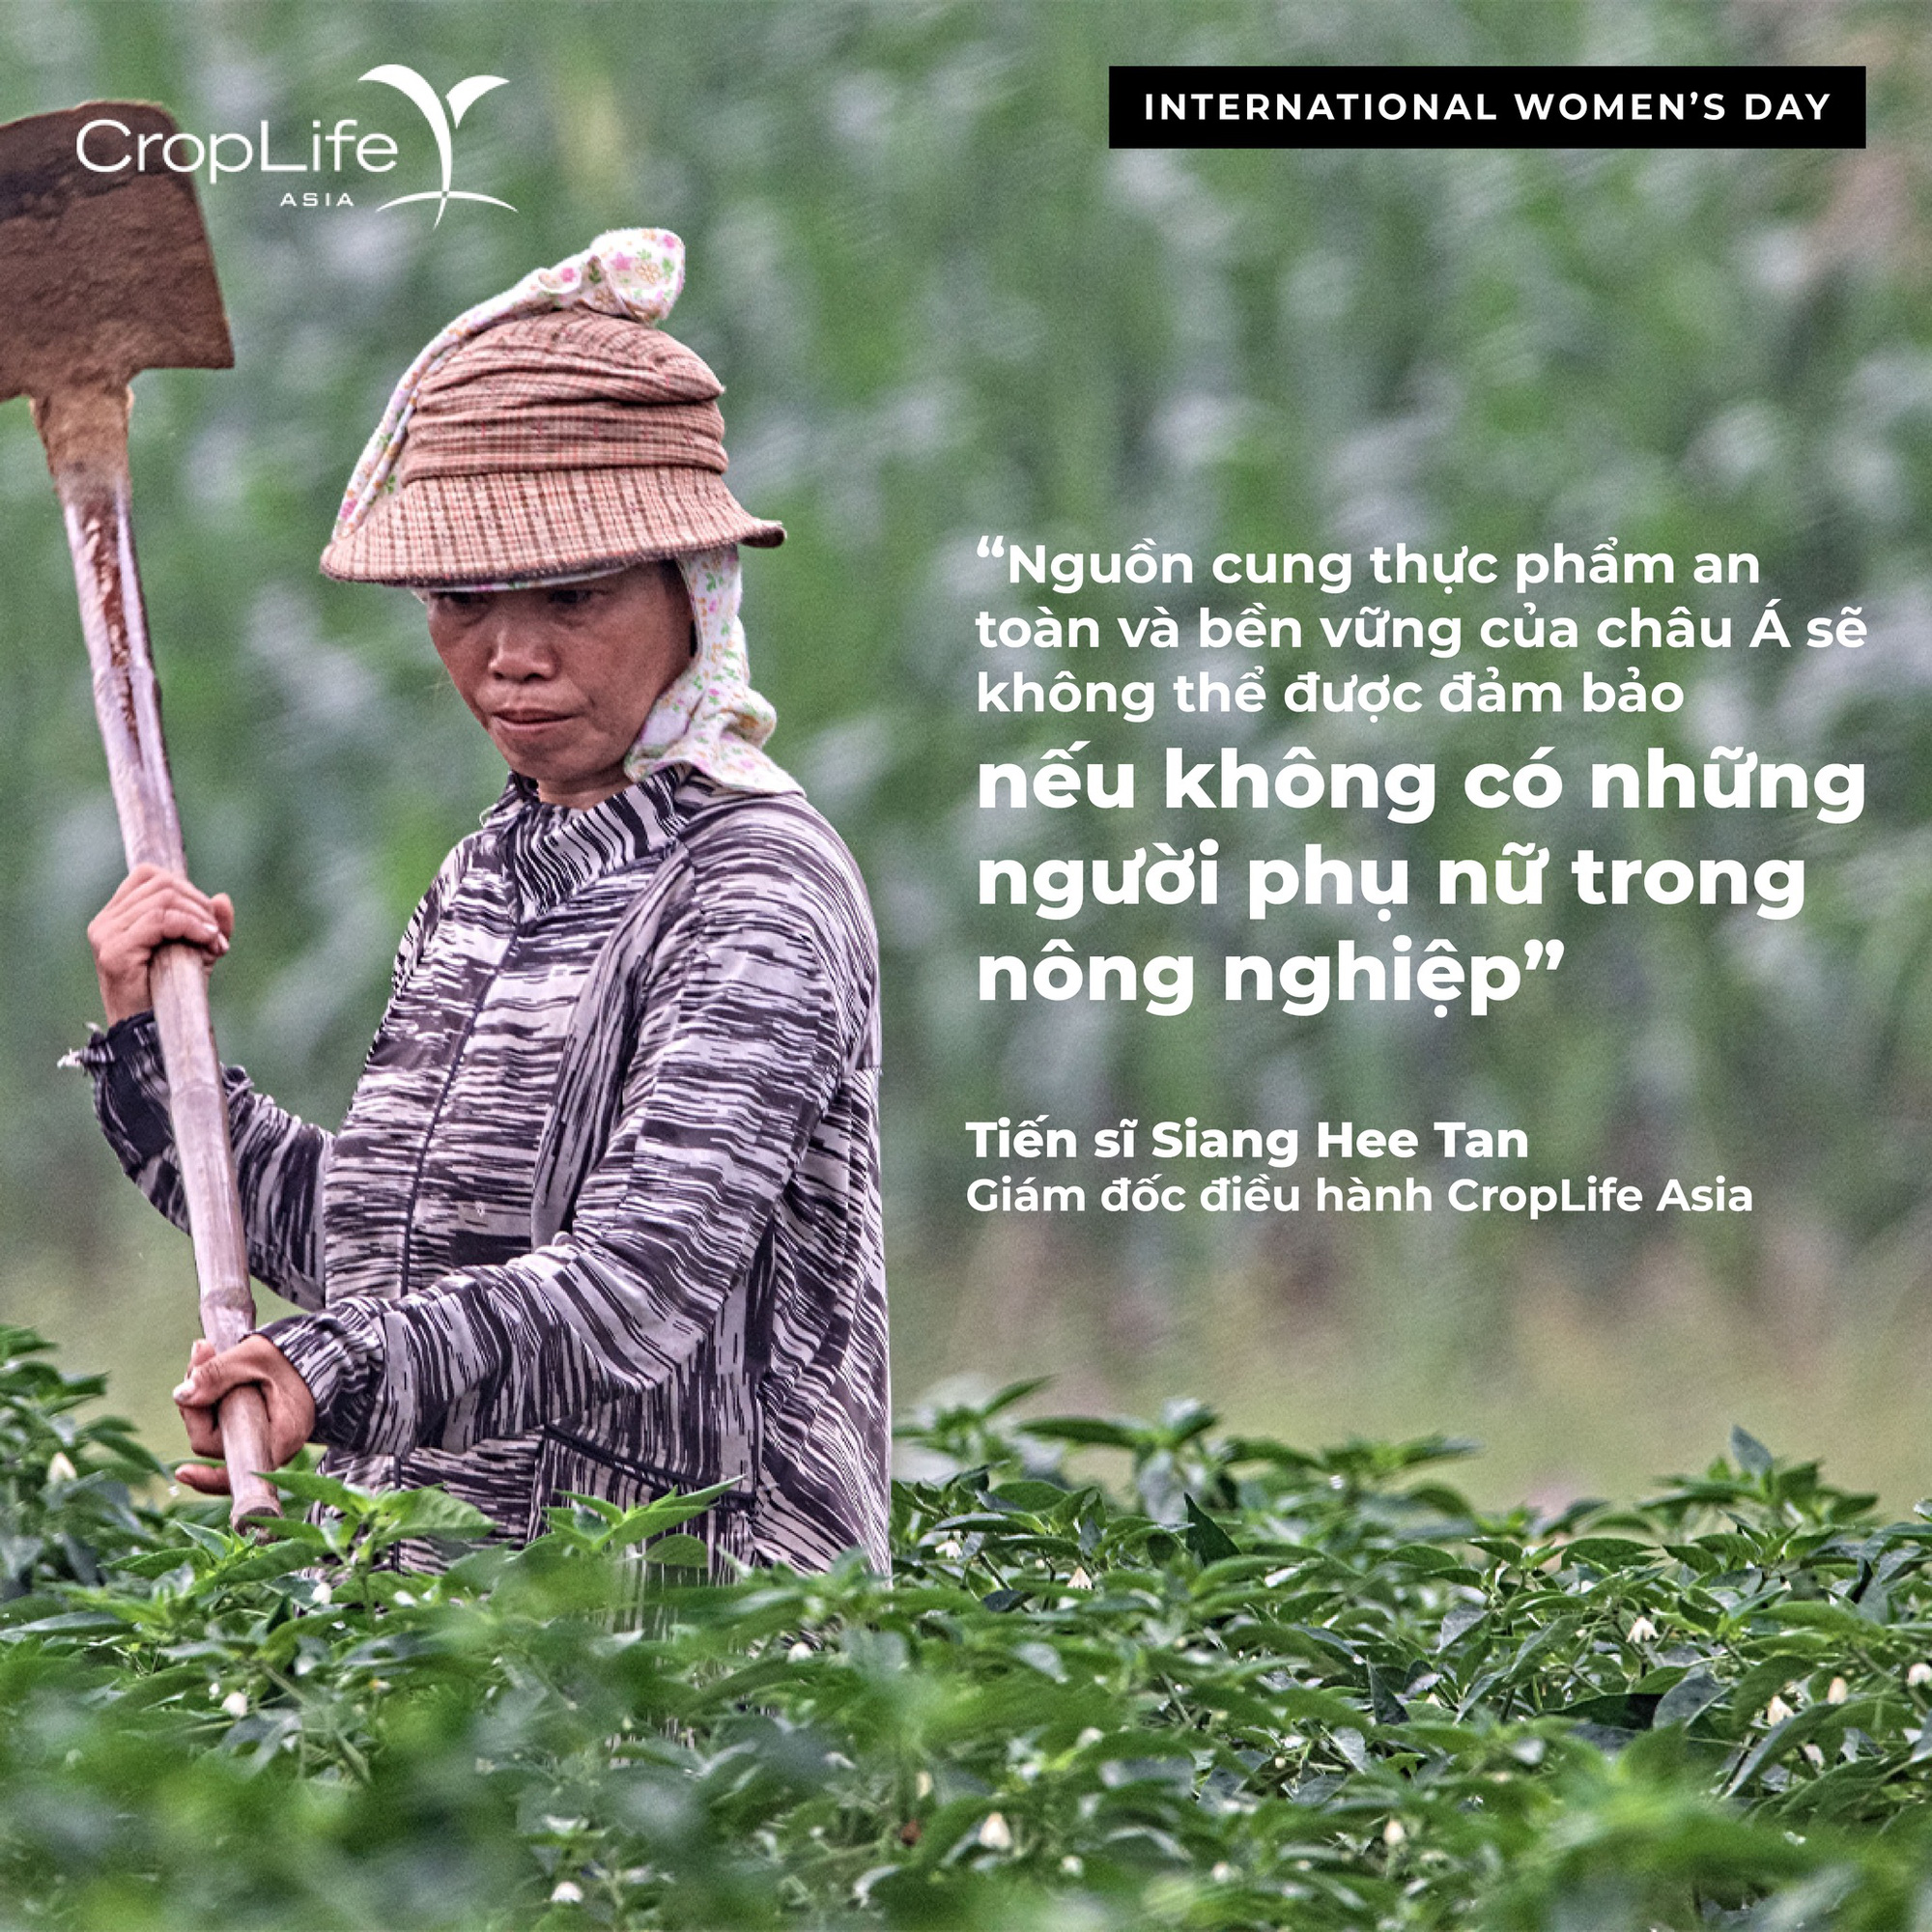 Ngày Quốc tế Phụ nữ 8/3, CropLife Châu Á hưởng ứng chiến dịch phá vỡ định kiến cho các nữ nông dân - Ảnh 1.